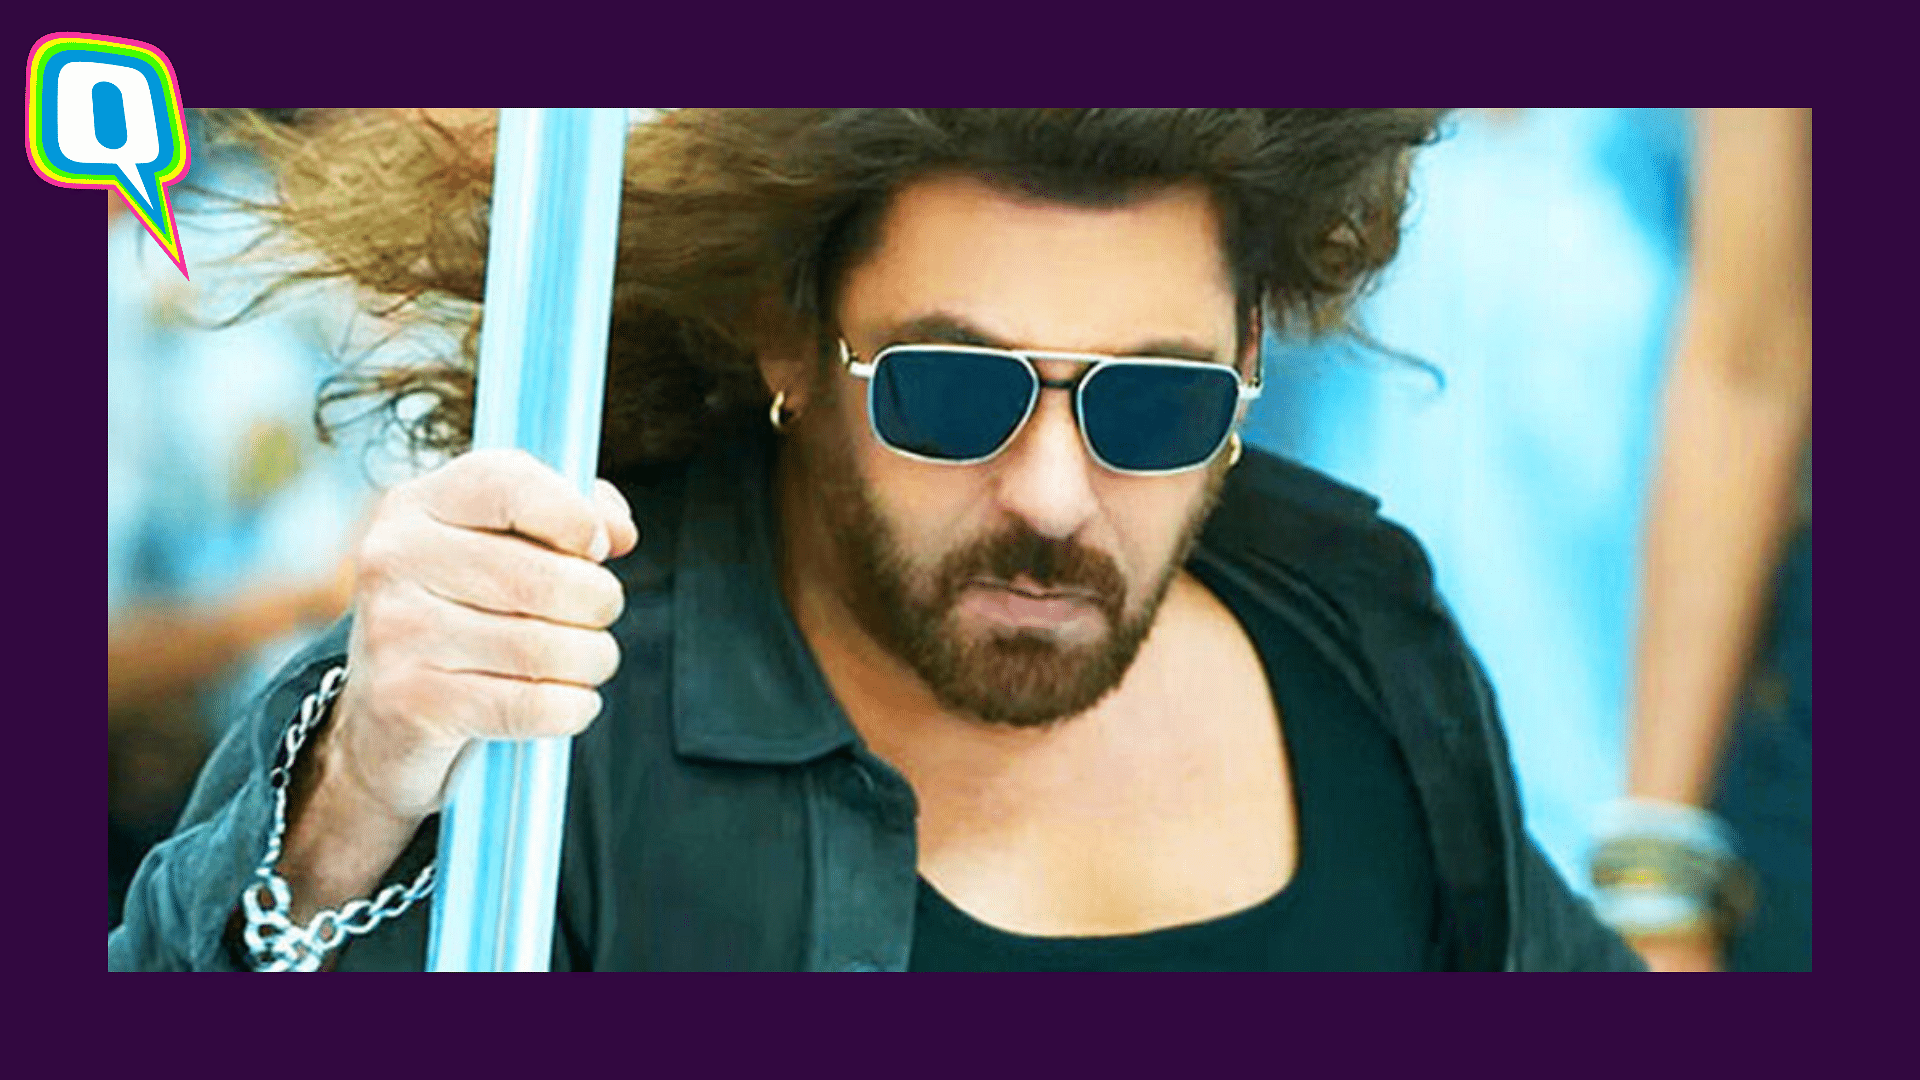 <div class="paragraphs"><p>Salman Khan's 'Kisi Ka Bhai Kisi Ki Jaan' Trailer Sparks Meme Fest Online</p></div>